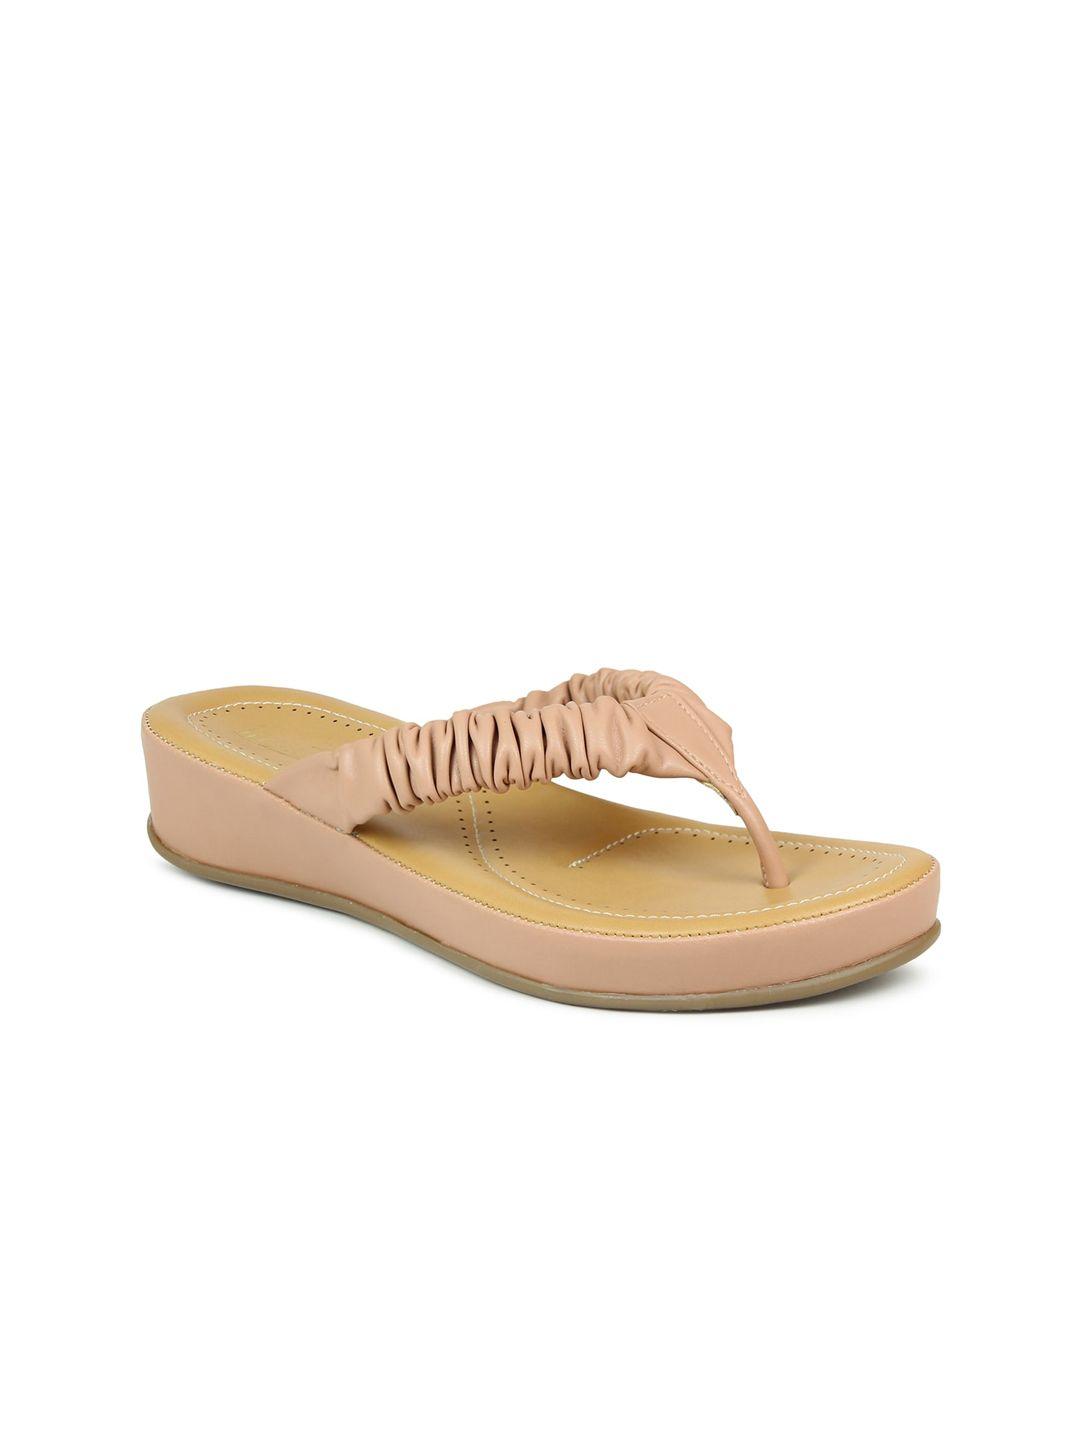 inc-5-peach-striped-wedge-sandals